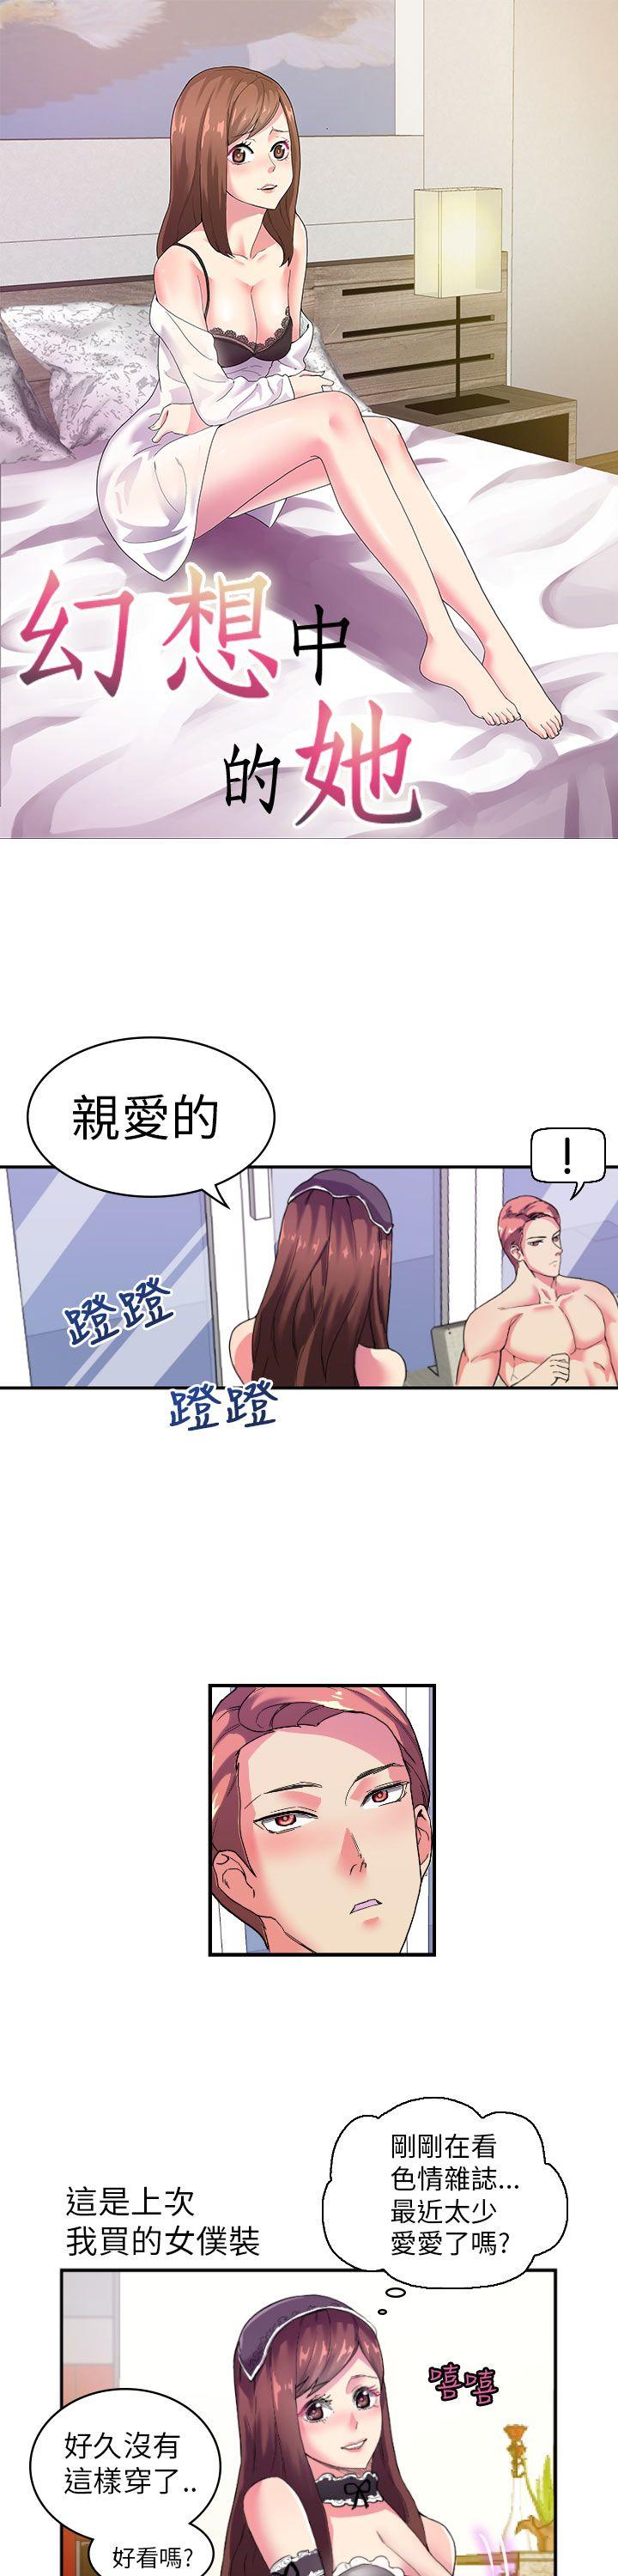 韩国污漫画 幻想中的她(完結) 第2话 1